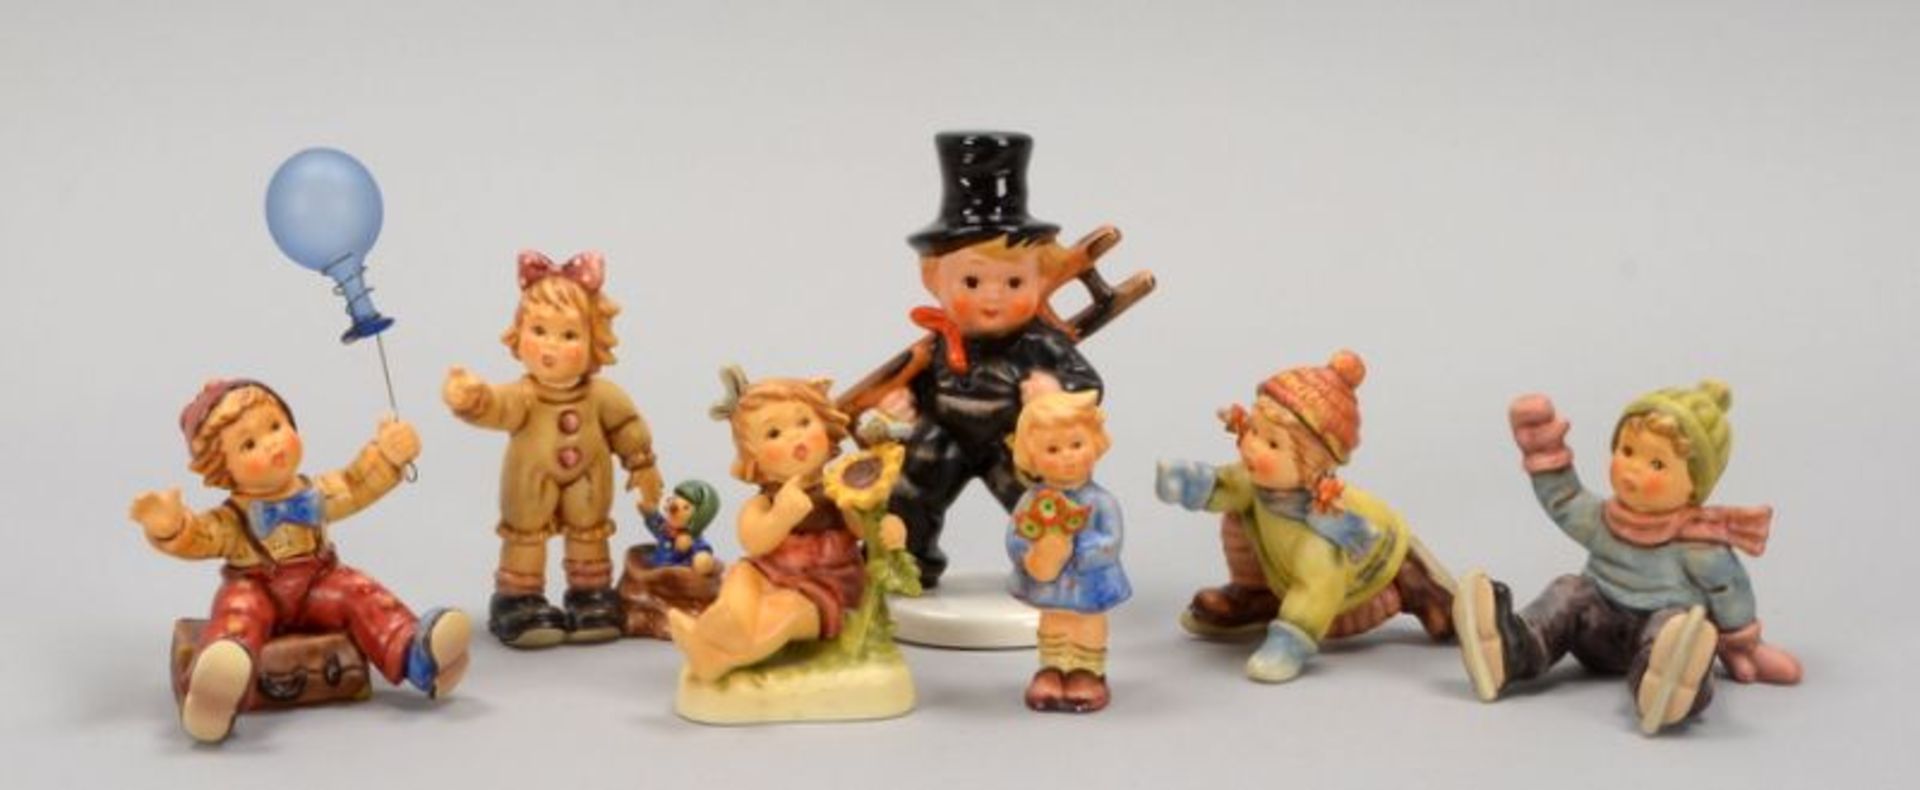 Hummel/Goebel, Porzellanfiguren, verschiedene Größen, 8 Stück; jeweils in Originalverpackung